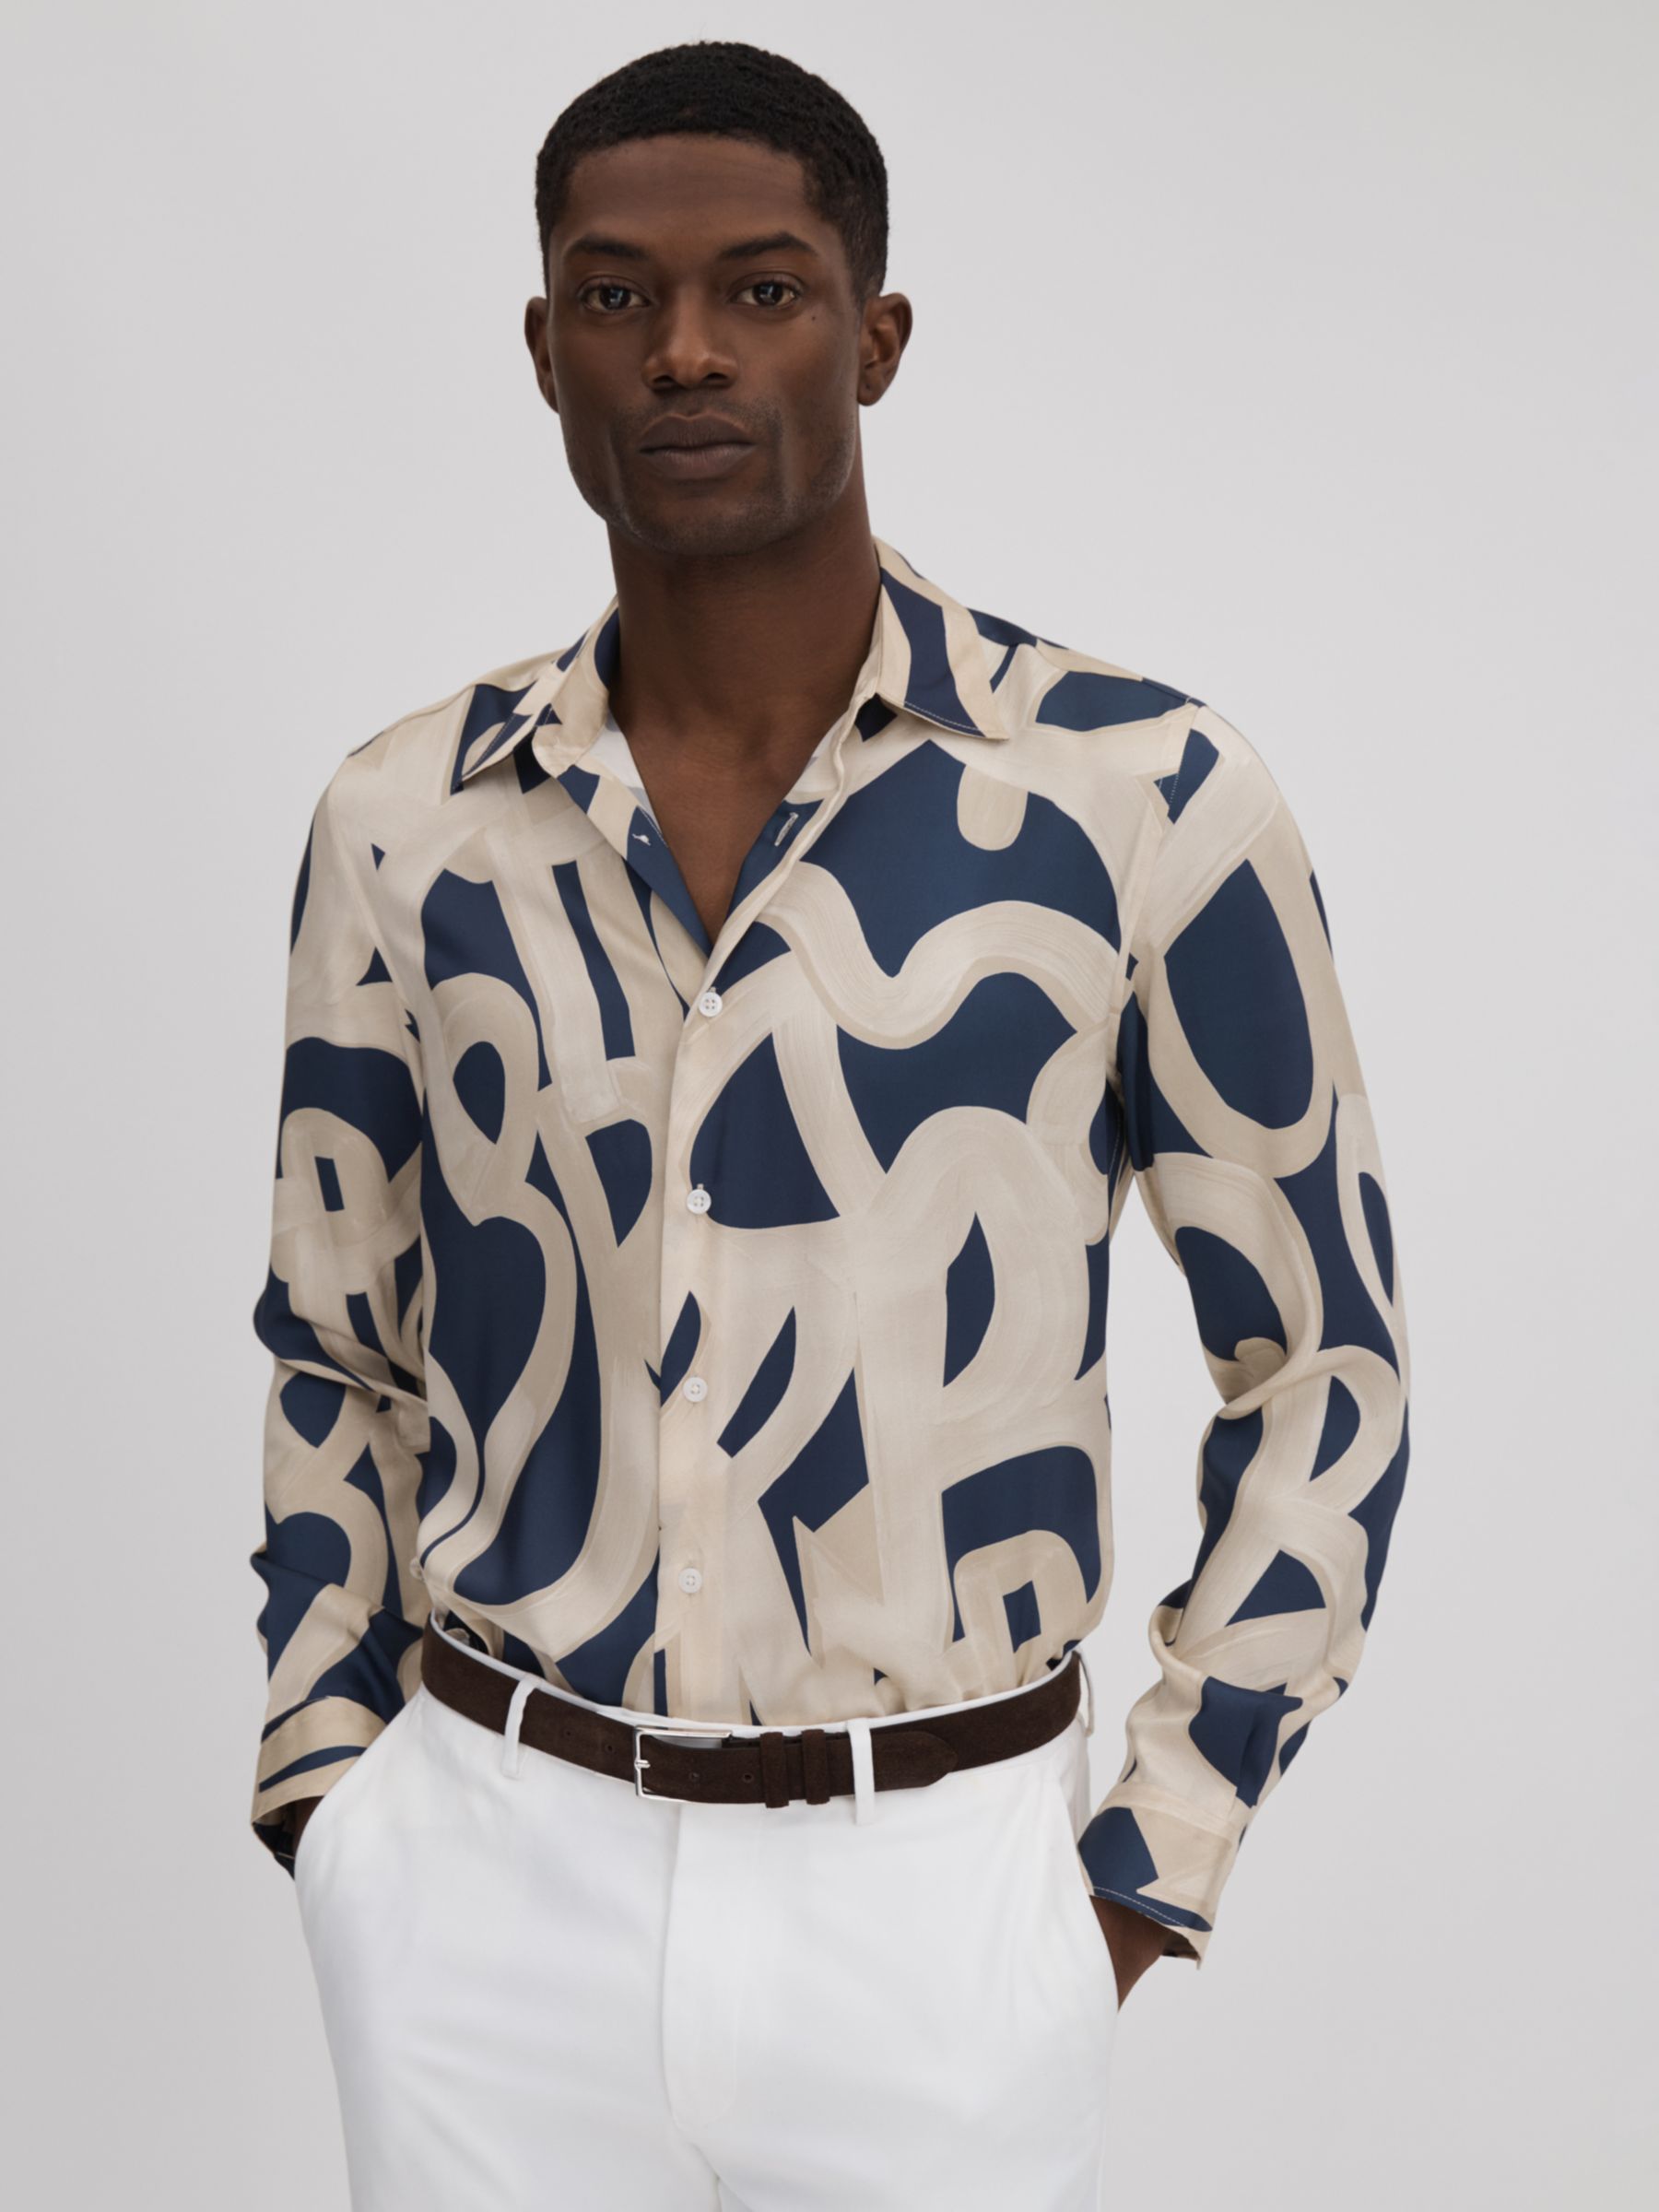 Reiss Jude Long Sleeve Painted Print Shirt, Navy/Ecru, M